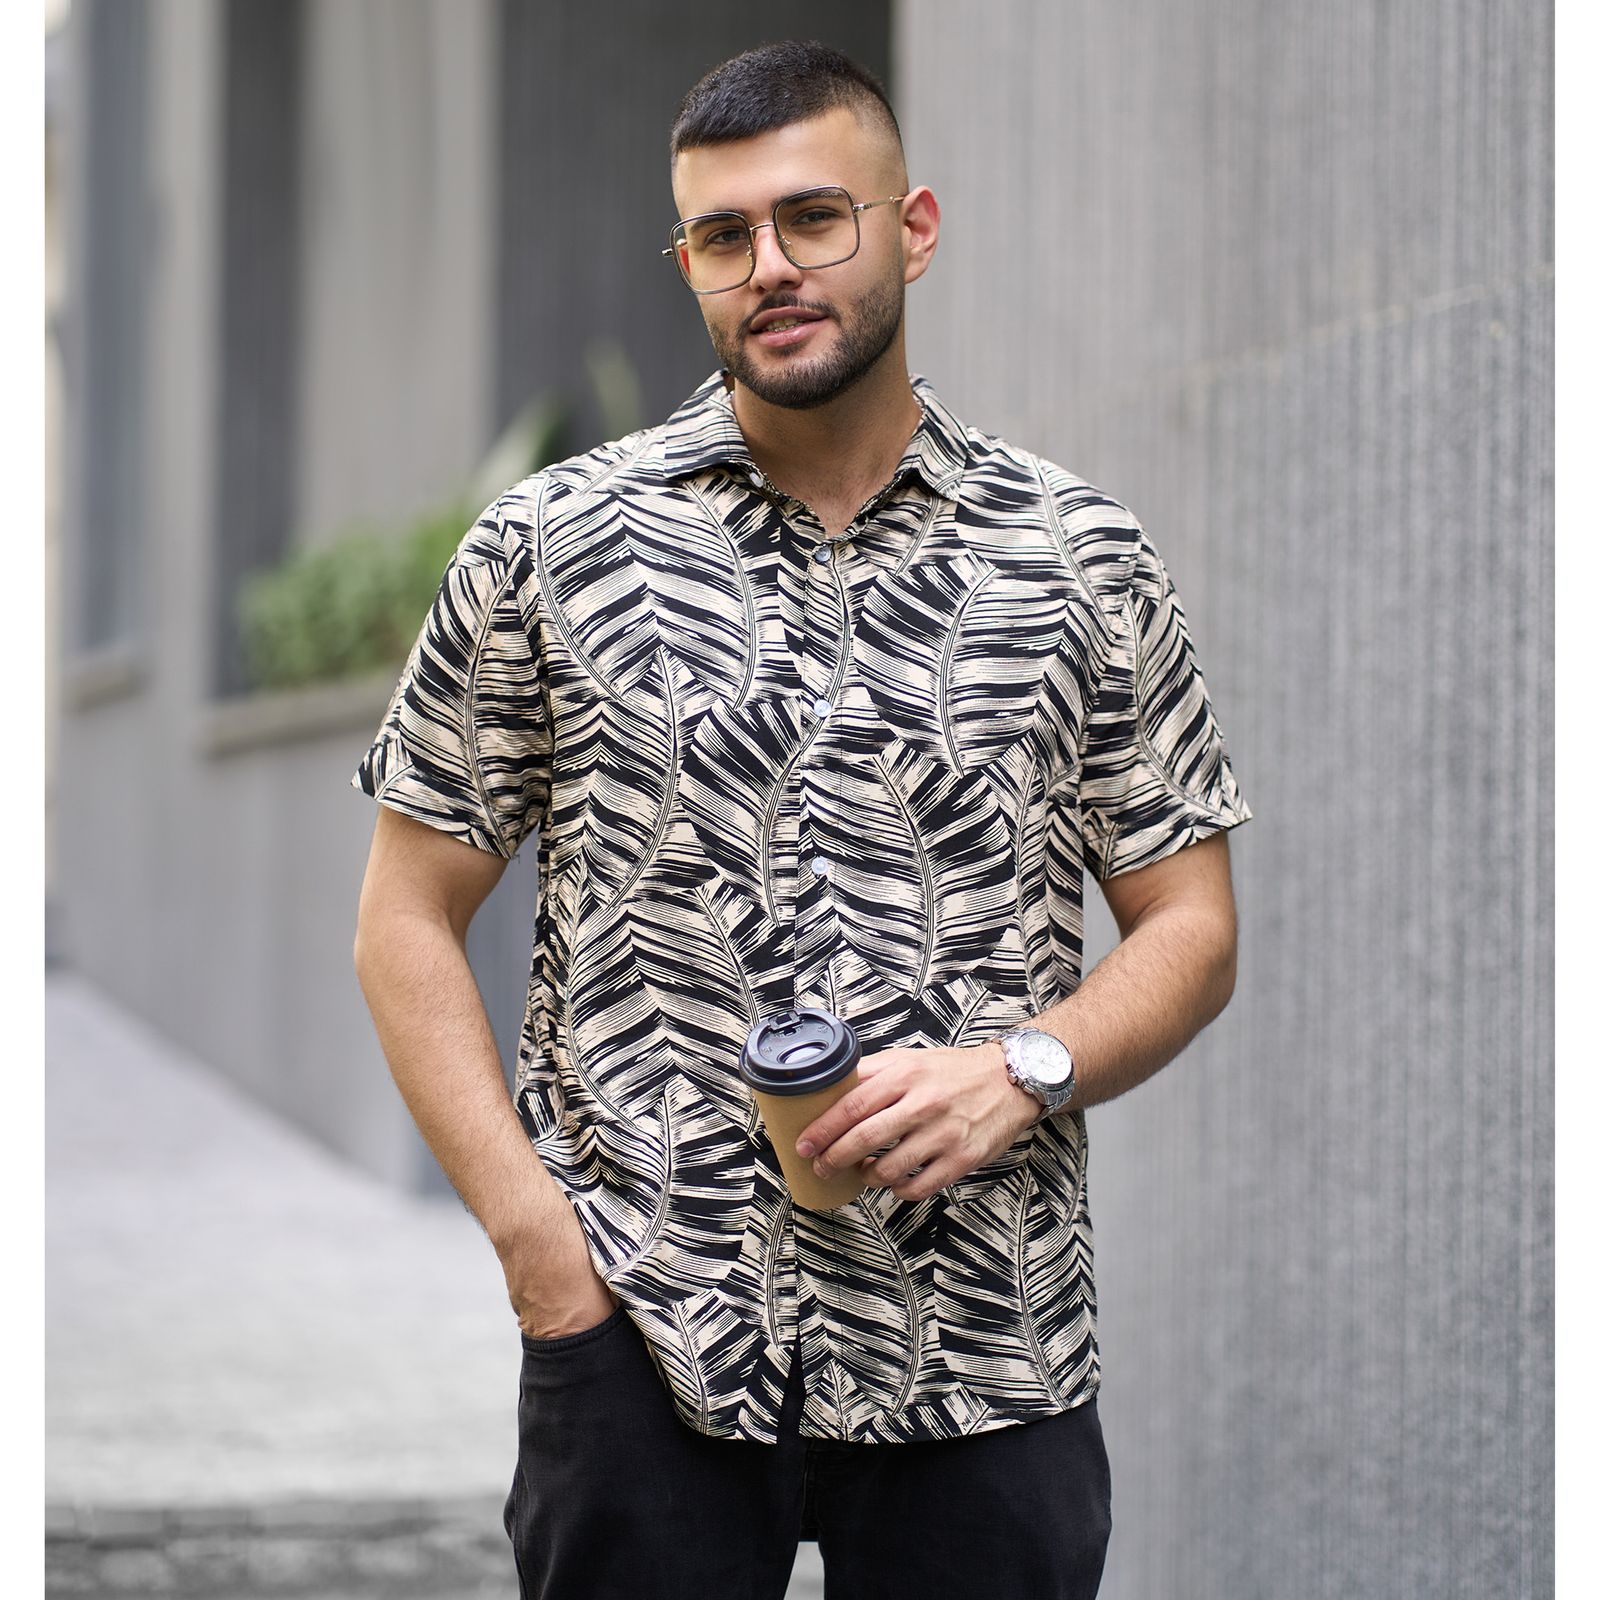 پیراهن آستین کوتاه مردانه  بست فشن مدل هاوایی کد 1151-152 -  - 2